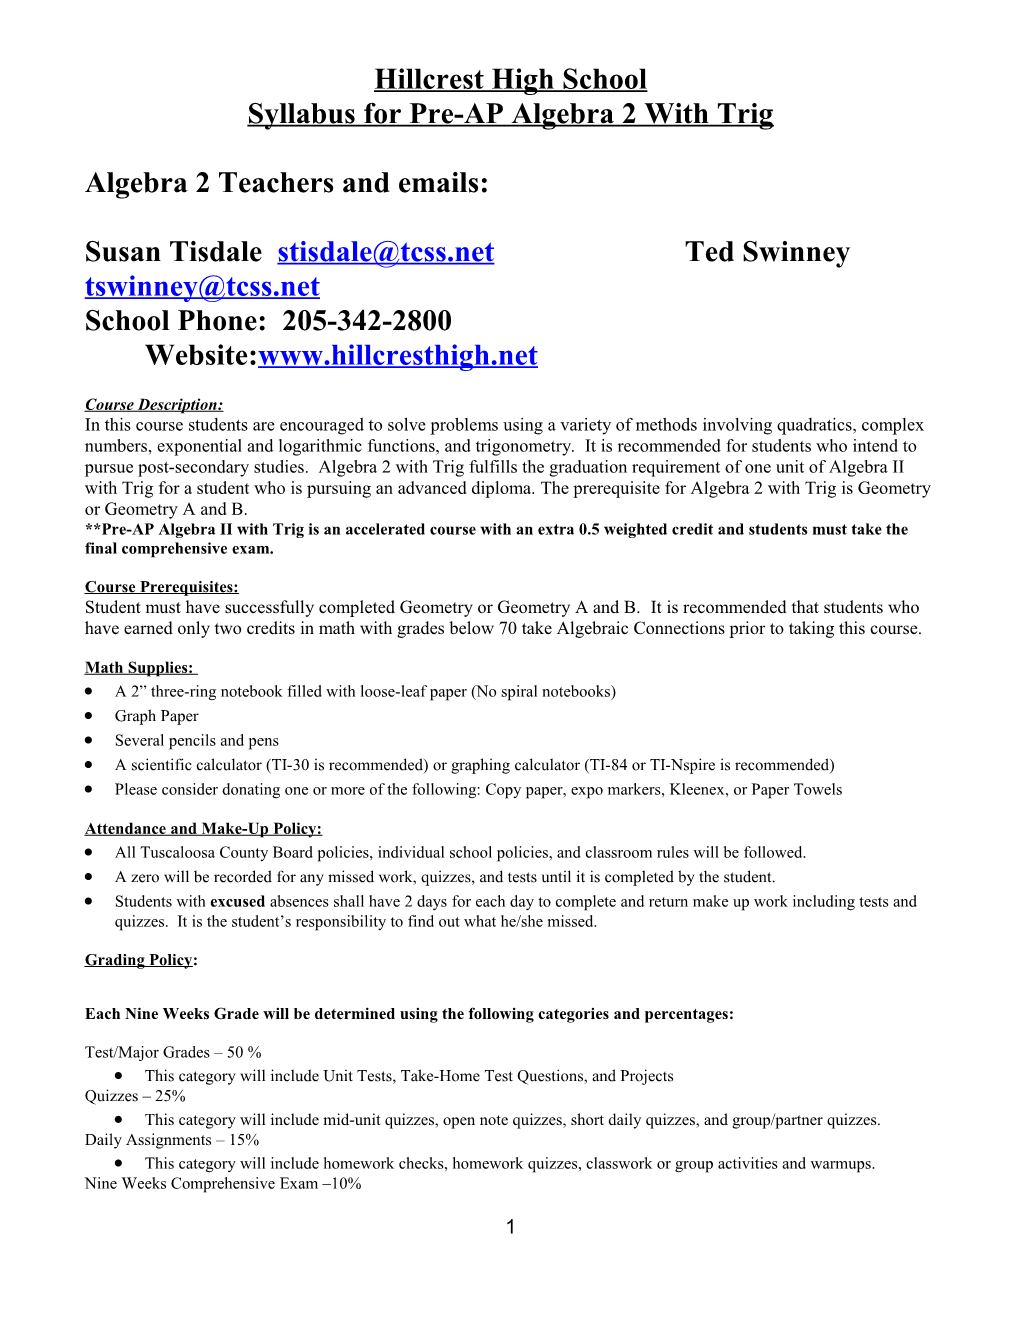 Syllabus for Pre-AP Algebra 2 with Trig